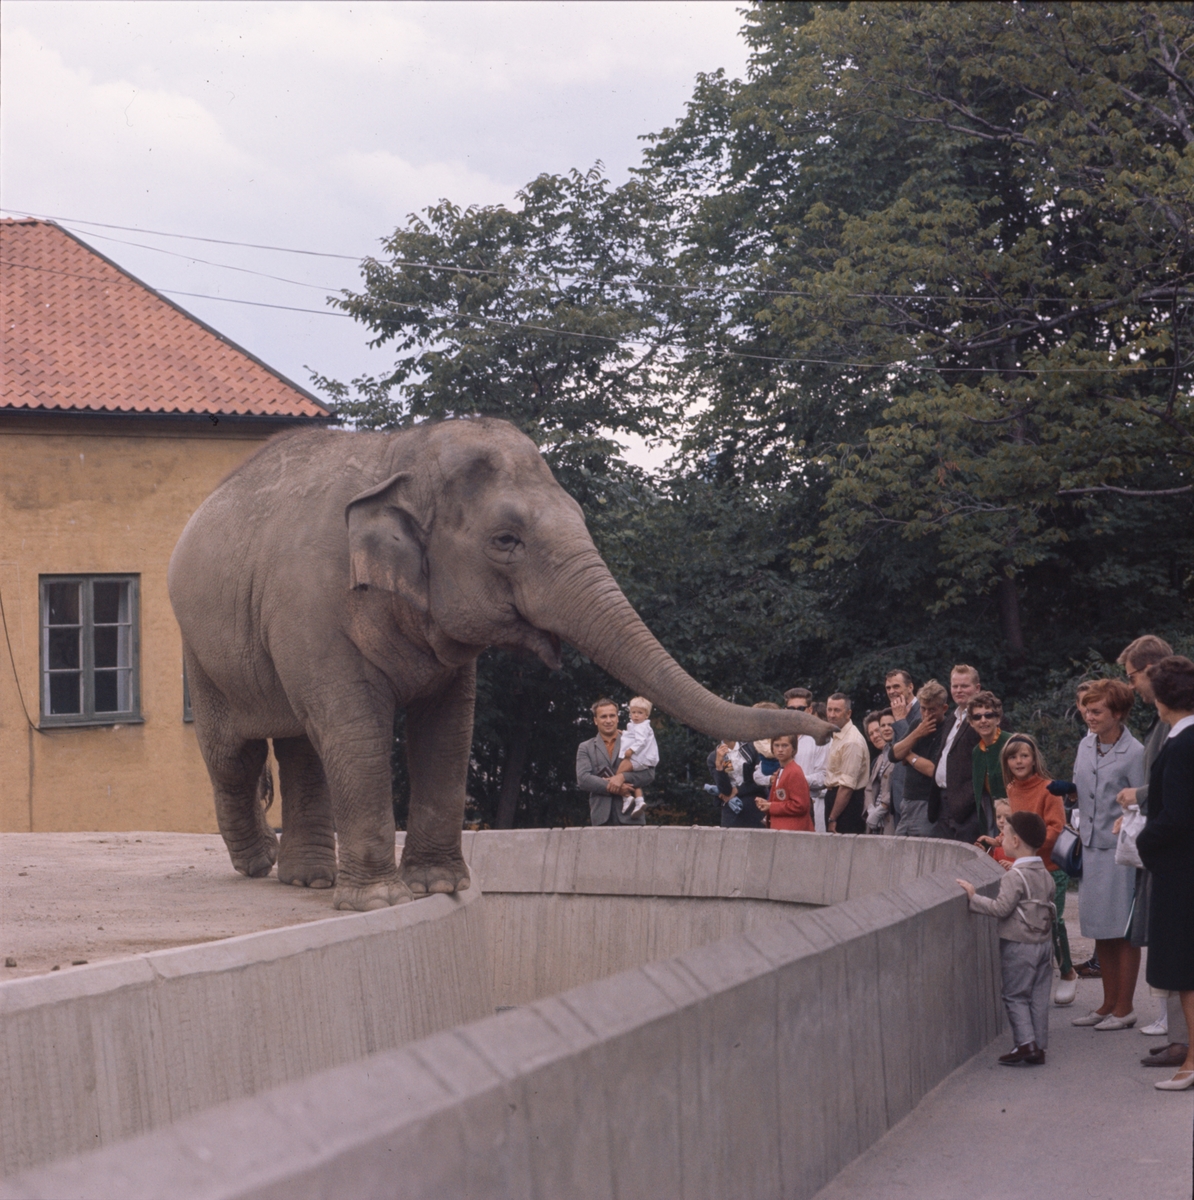 De Asiatiska elefanterna vid elefanthuset på Skansen. Barn och vuxna besökare.